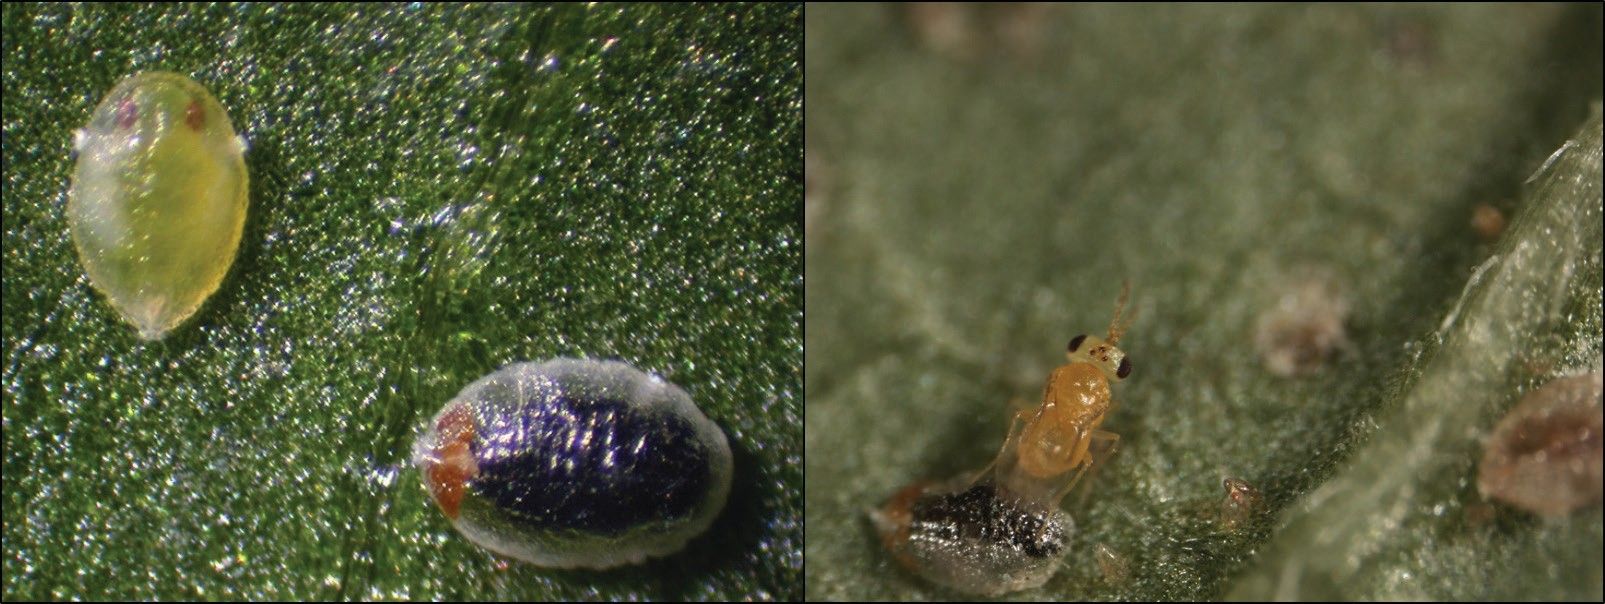 Bemisia tabaci nymph parasitized by parasitic wasp, Encarsia sophia (on left), parasitoid emerging (on right).